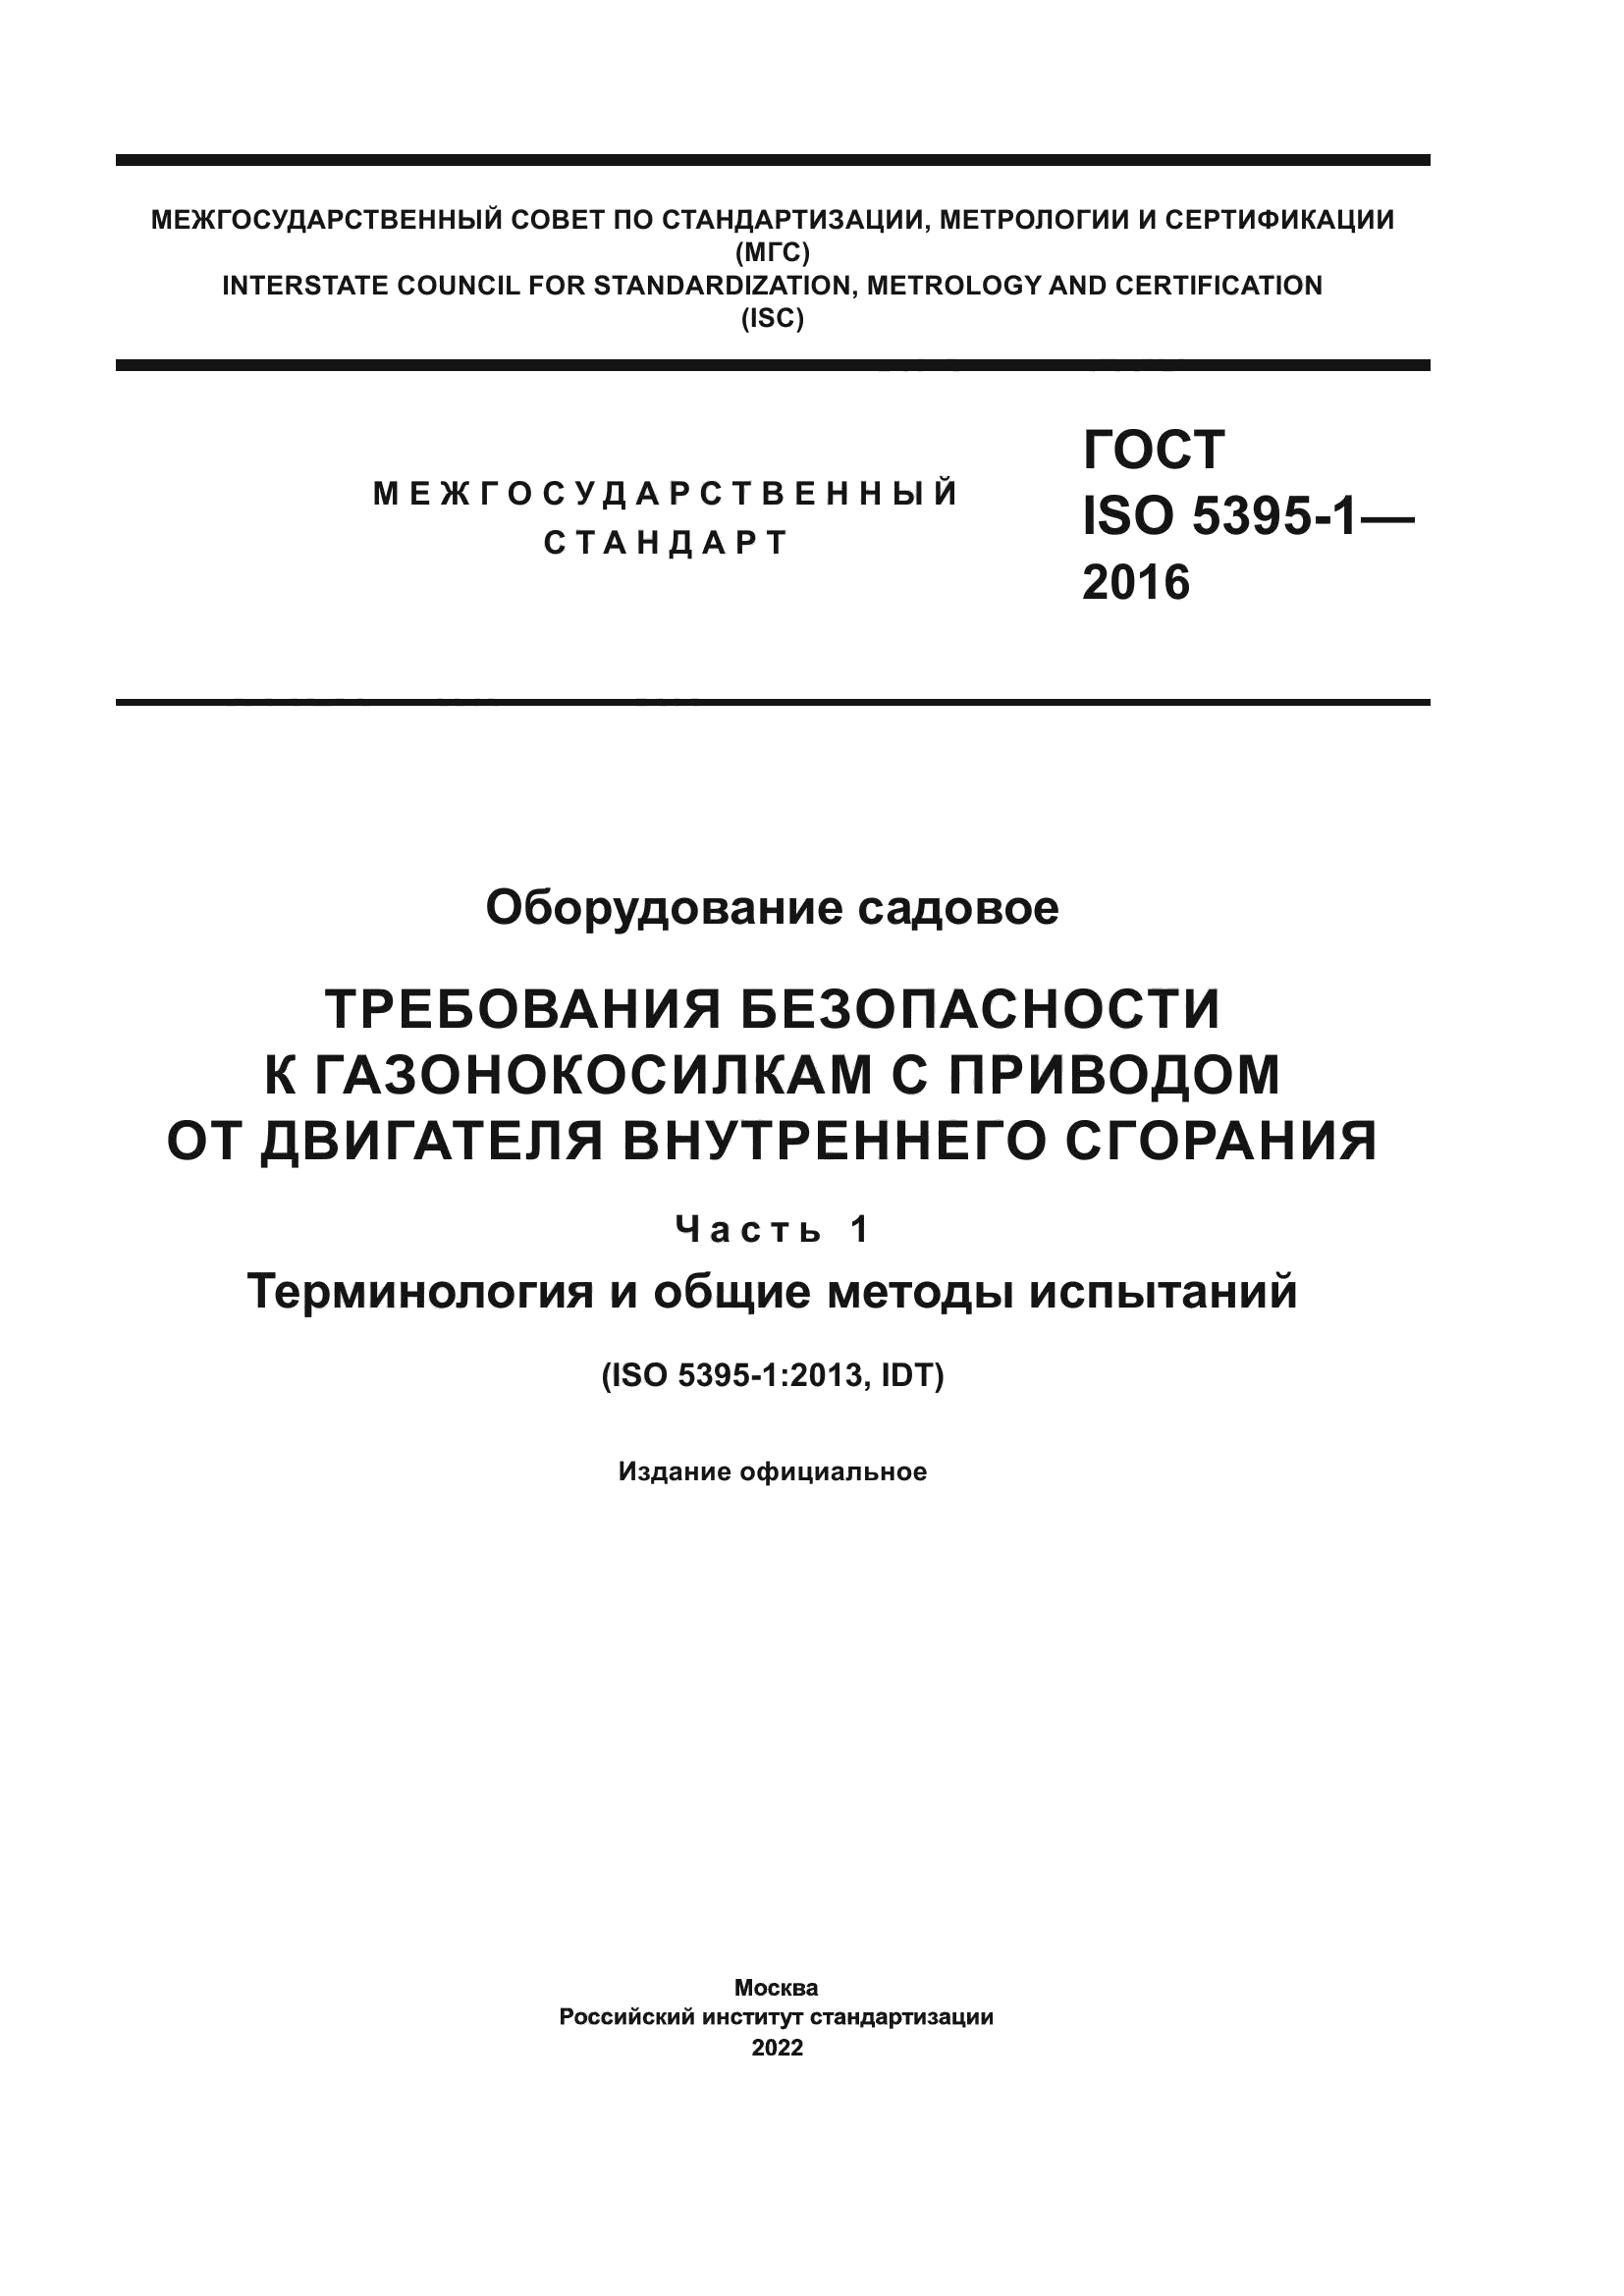 ГОСТ ISO 5395-1-2016